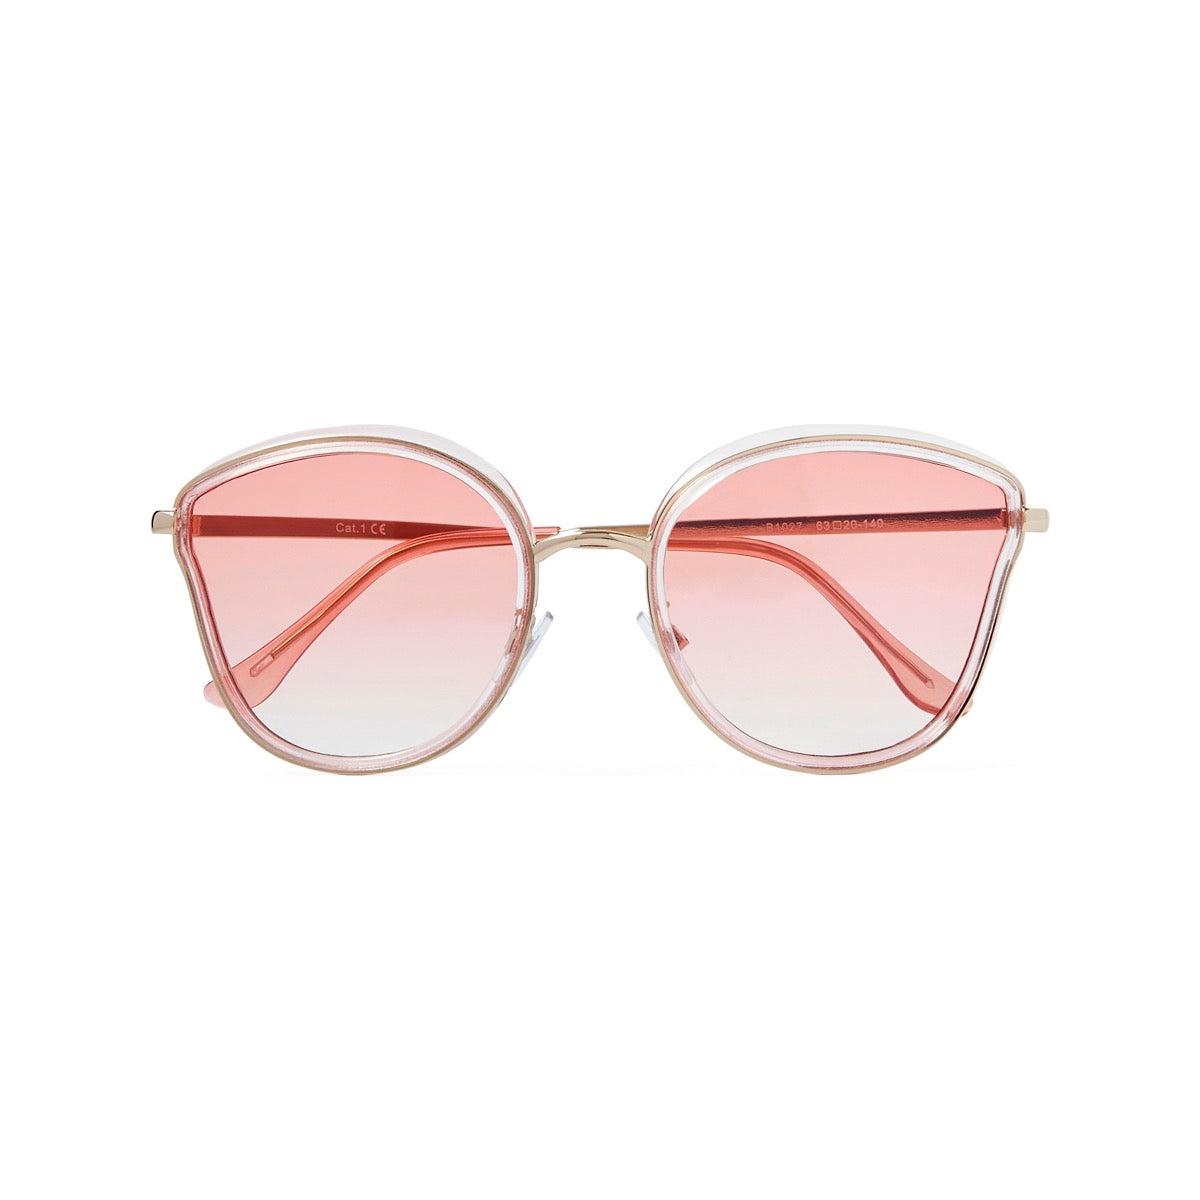 Gafas estilo ojo de gato con lentes rosas